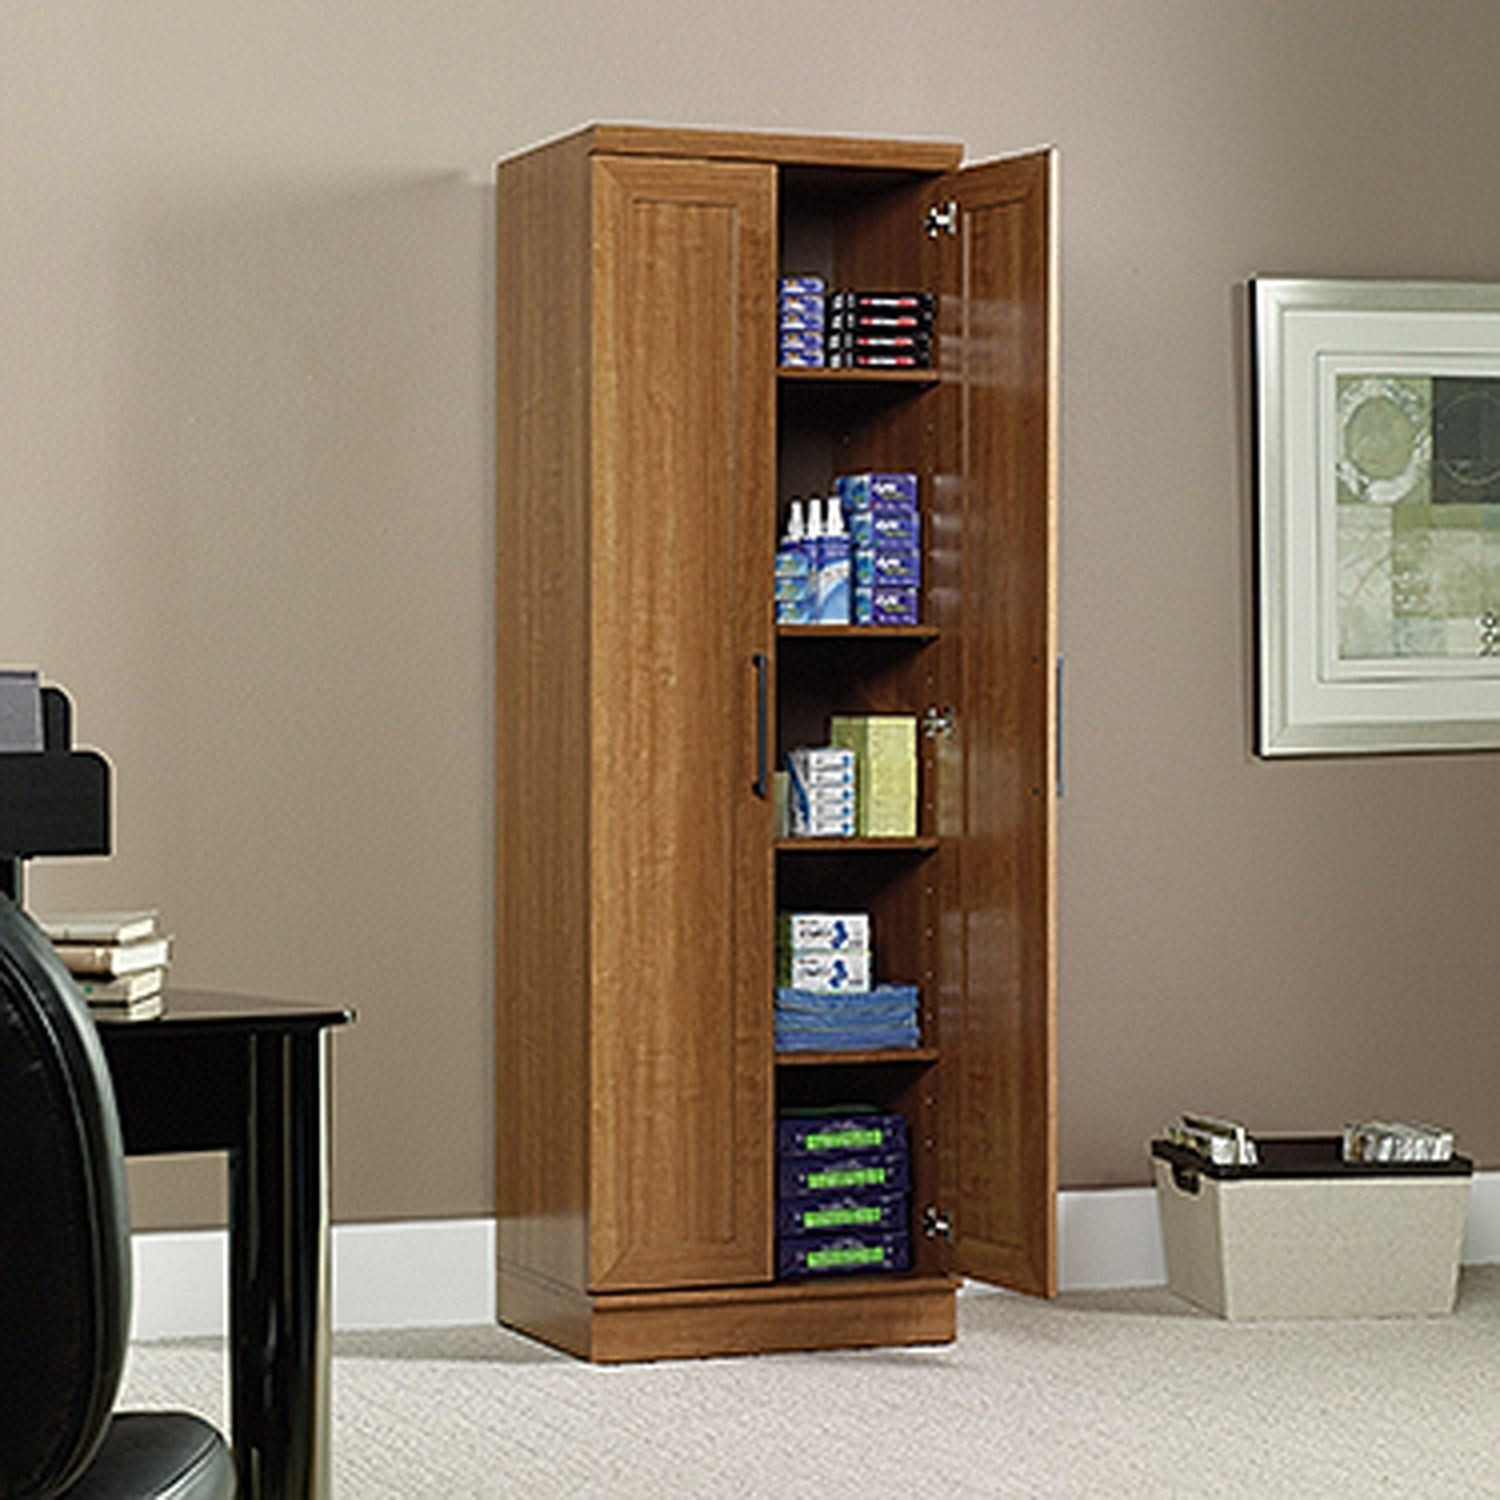 Best ideas about Sauder Homeplus Storage Cabinet
. Save or Pin Homeplus Storage Cabinet Sienna Oak D Now.